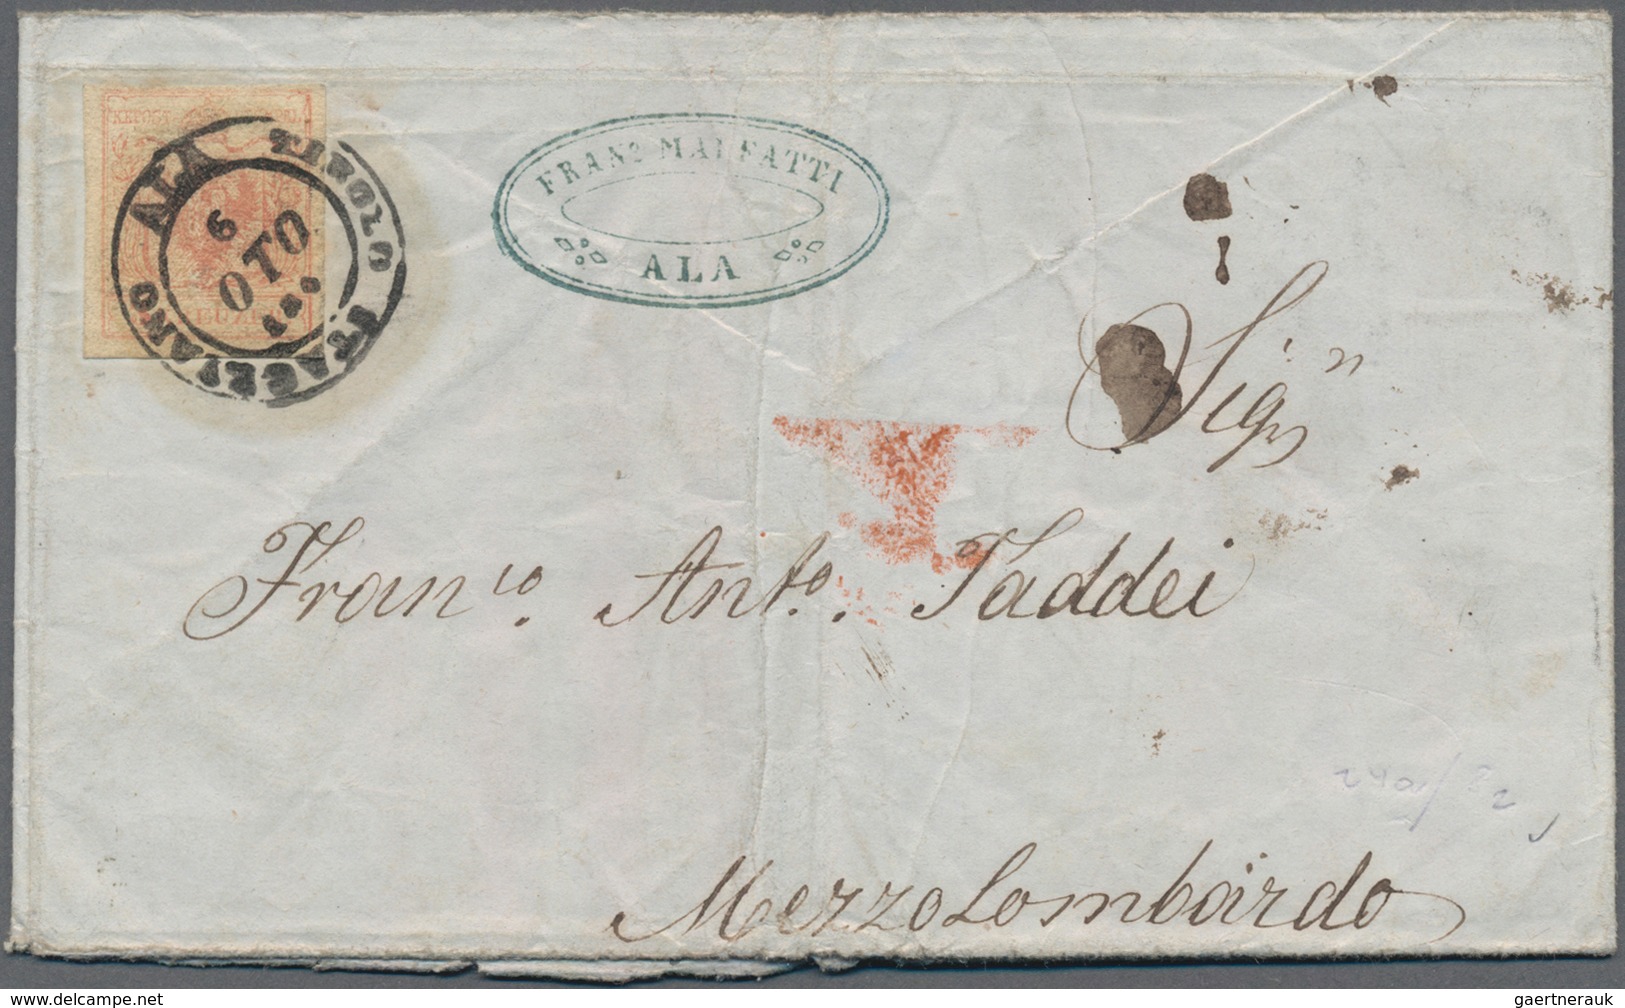 Österreich: 1853/1858, Partie von 19 Briefhüllen mit Frankaturen der ersten Ausgabe, dabei nette Ste